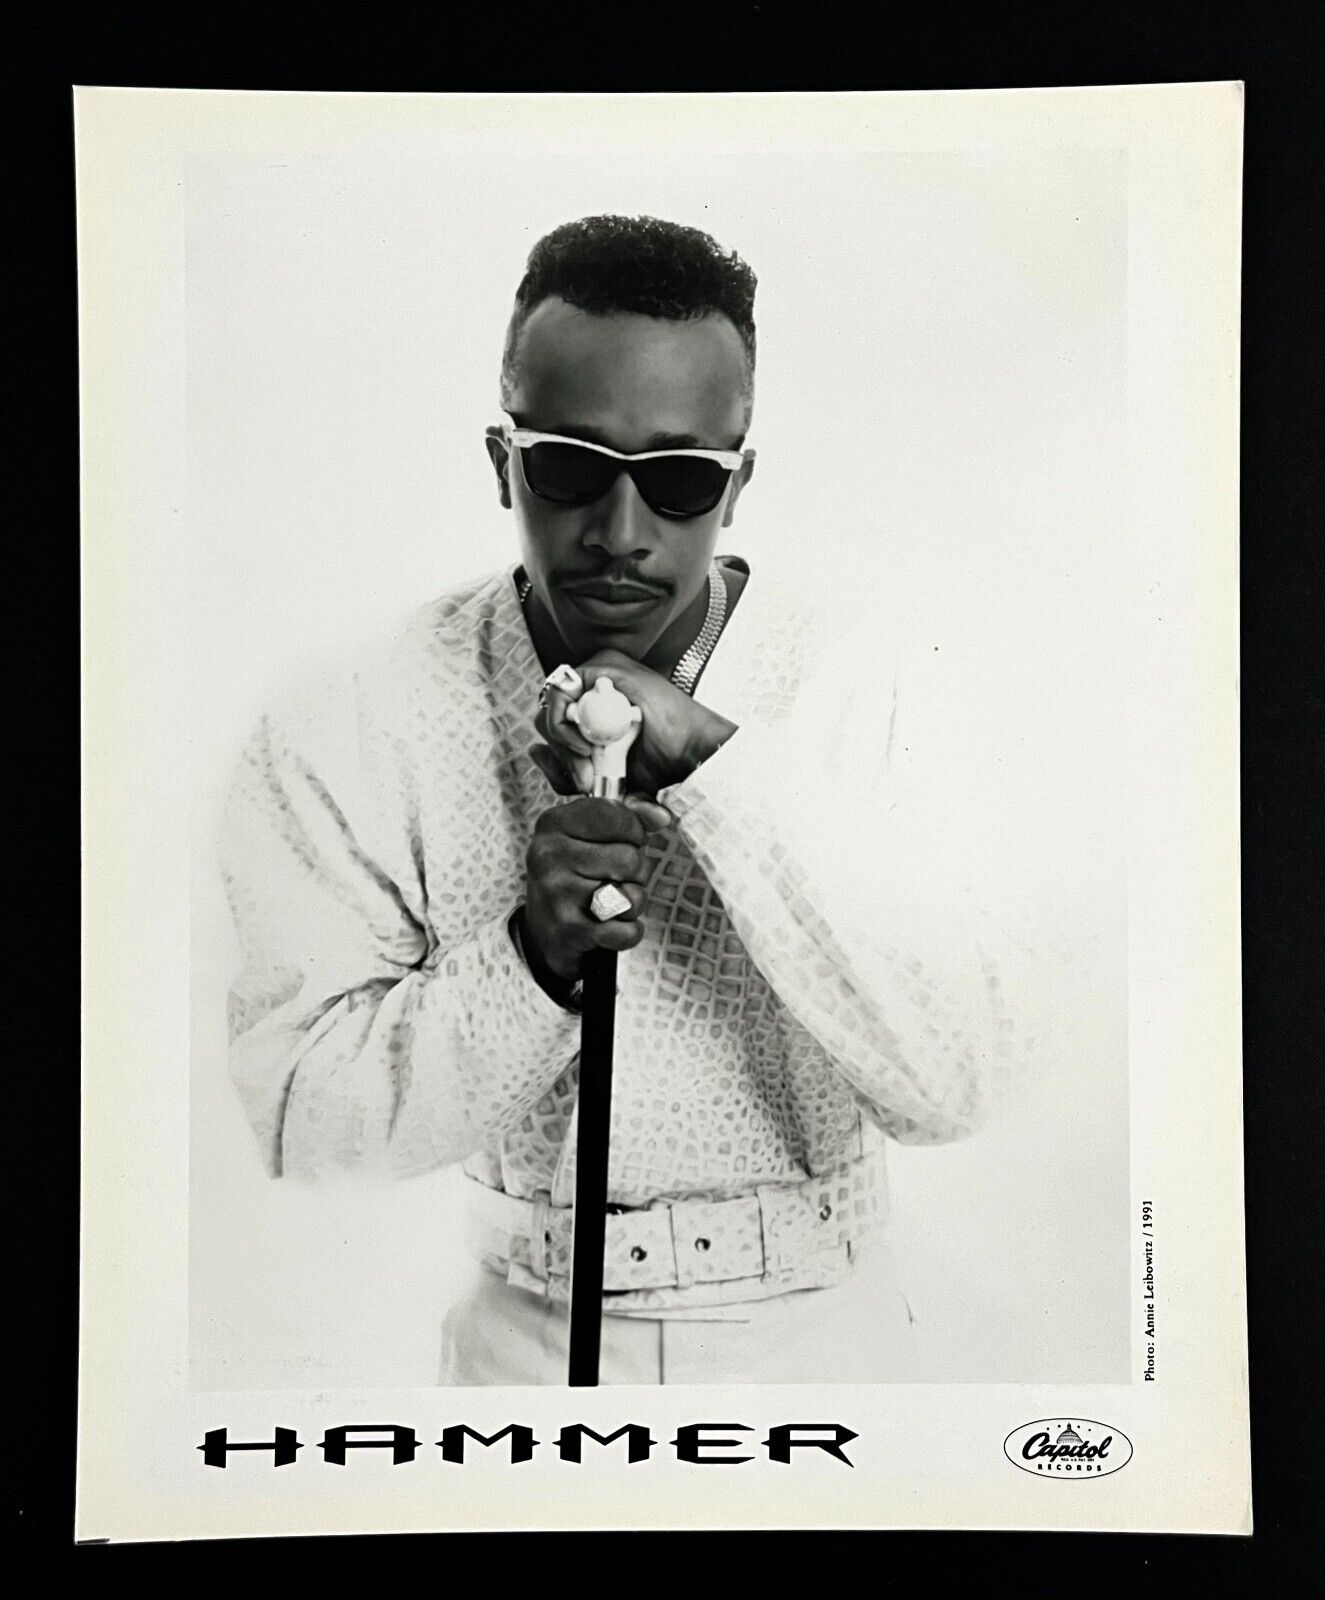 1991 MC Hammer Rapper DJ Vintage Promo Photo Cane Snakeskin Belt